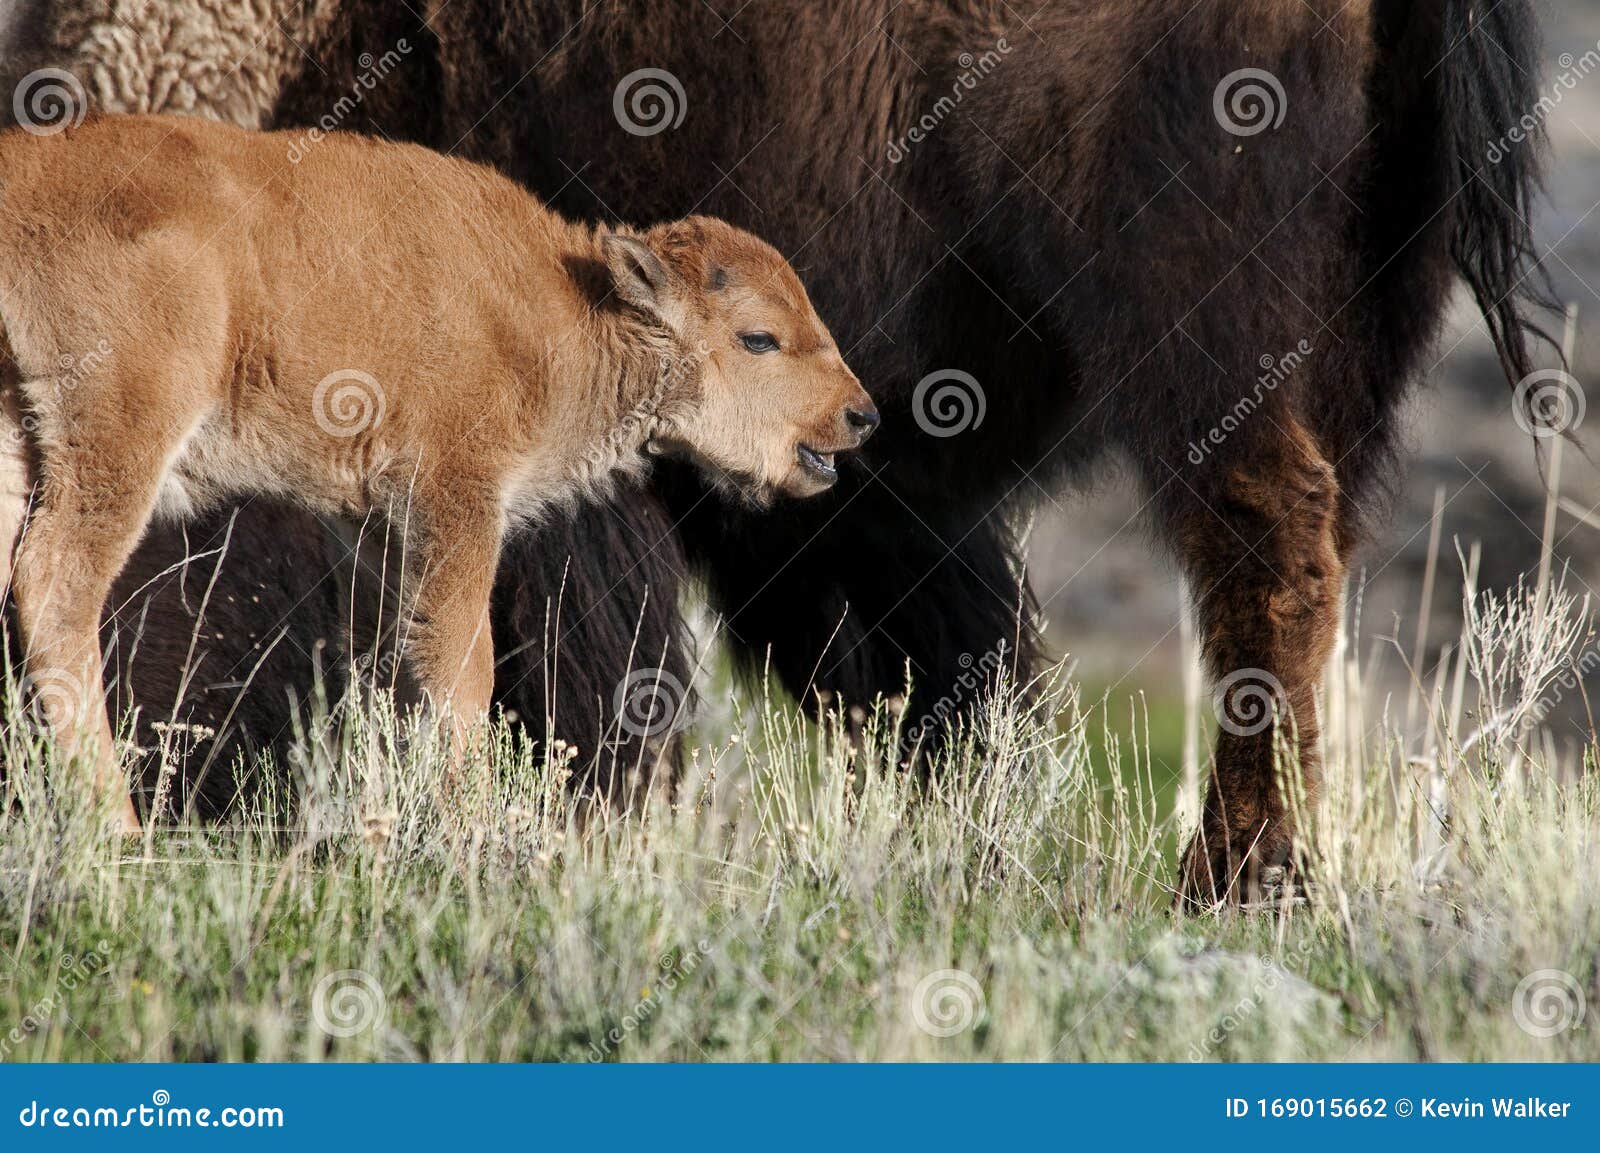 5,563 Buffalo Calf Photos - & Royalty-Free Stock Photos from Dreamstime